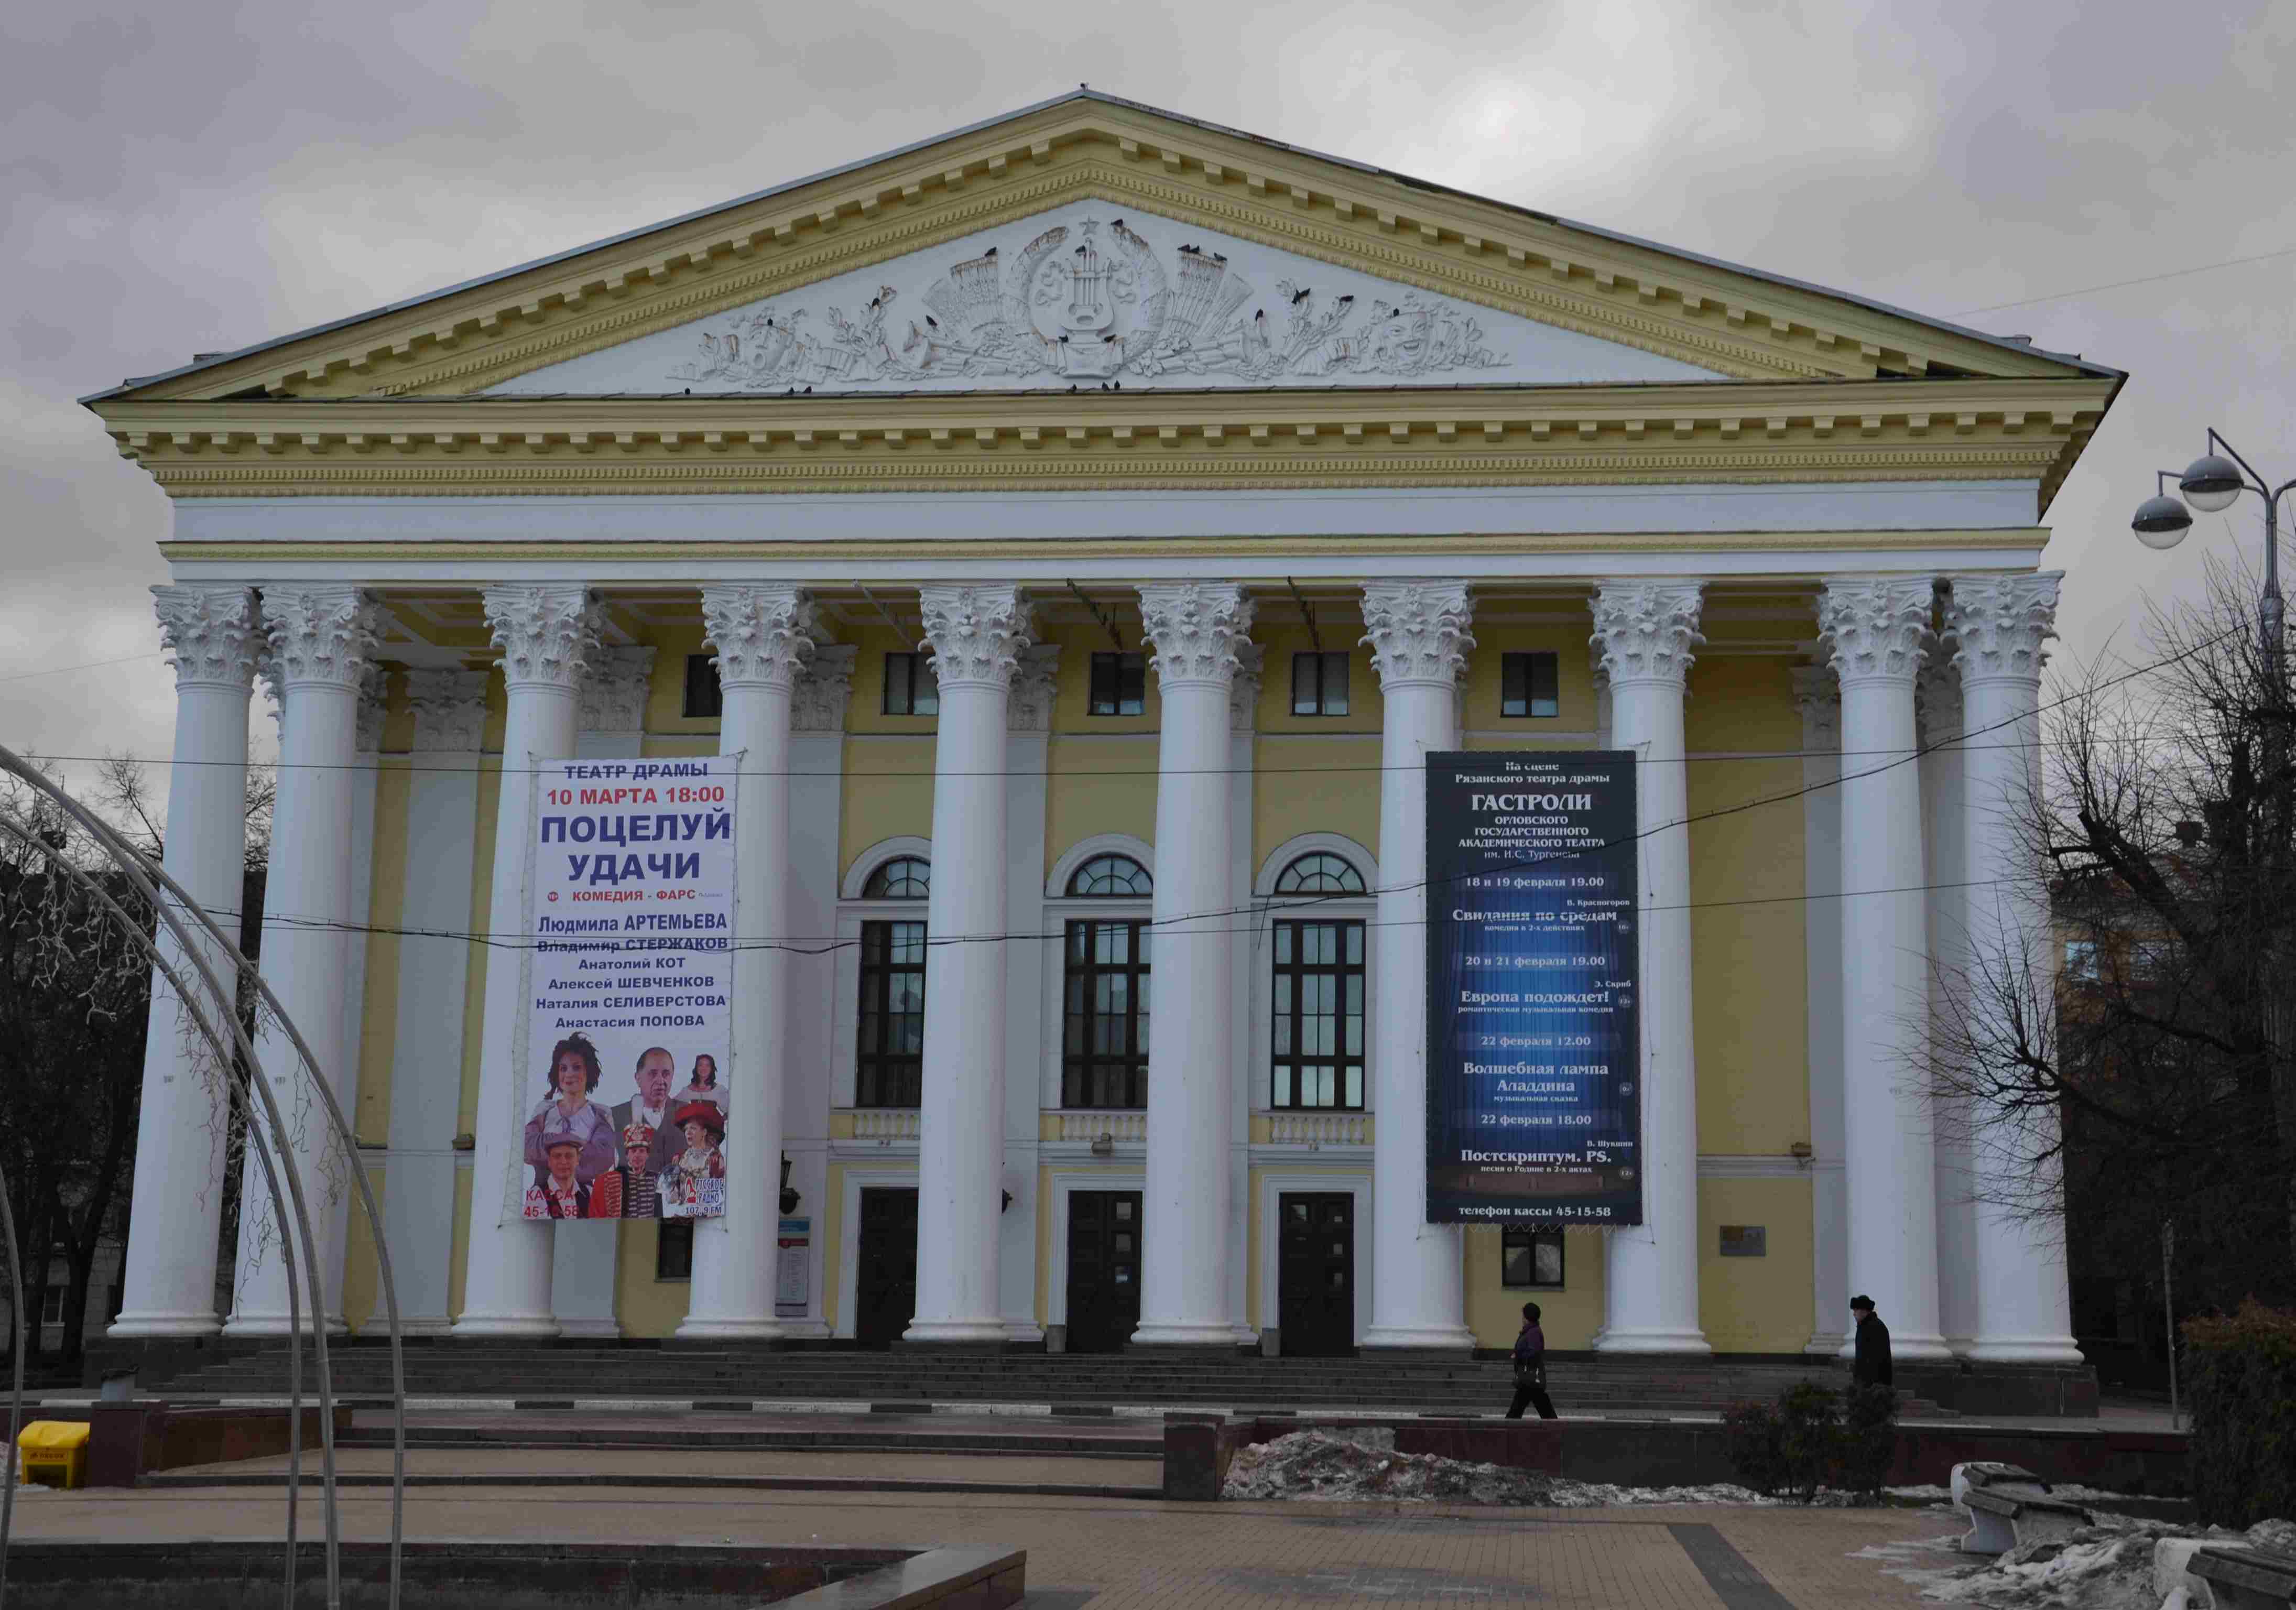 Рязанский театр драмы открыл онлайн-продажу билетов